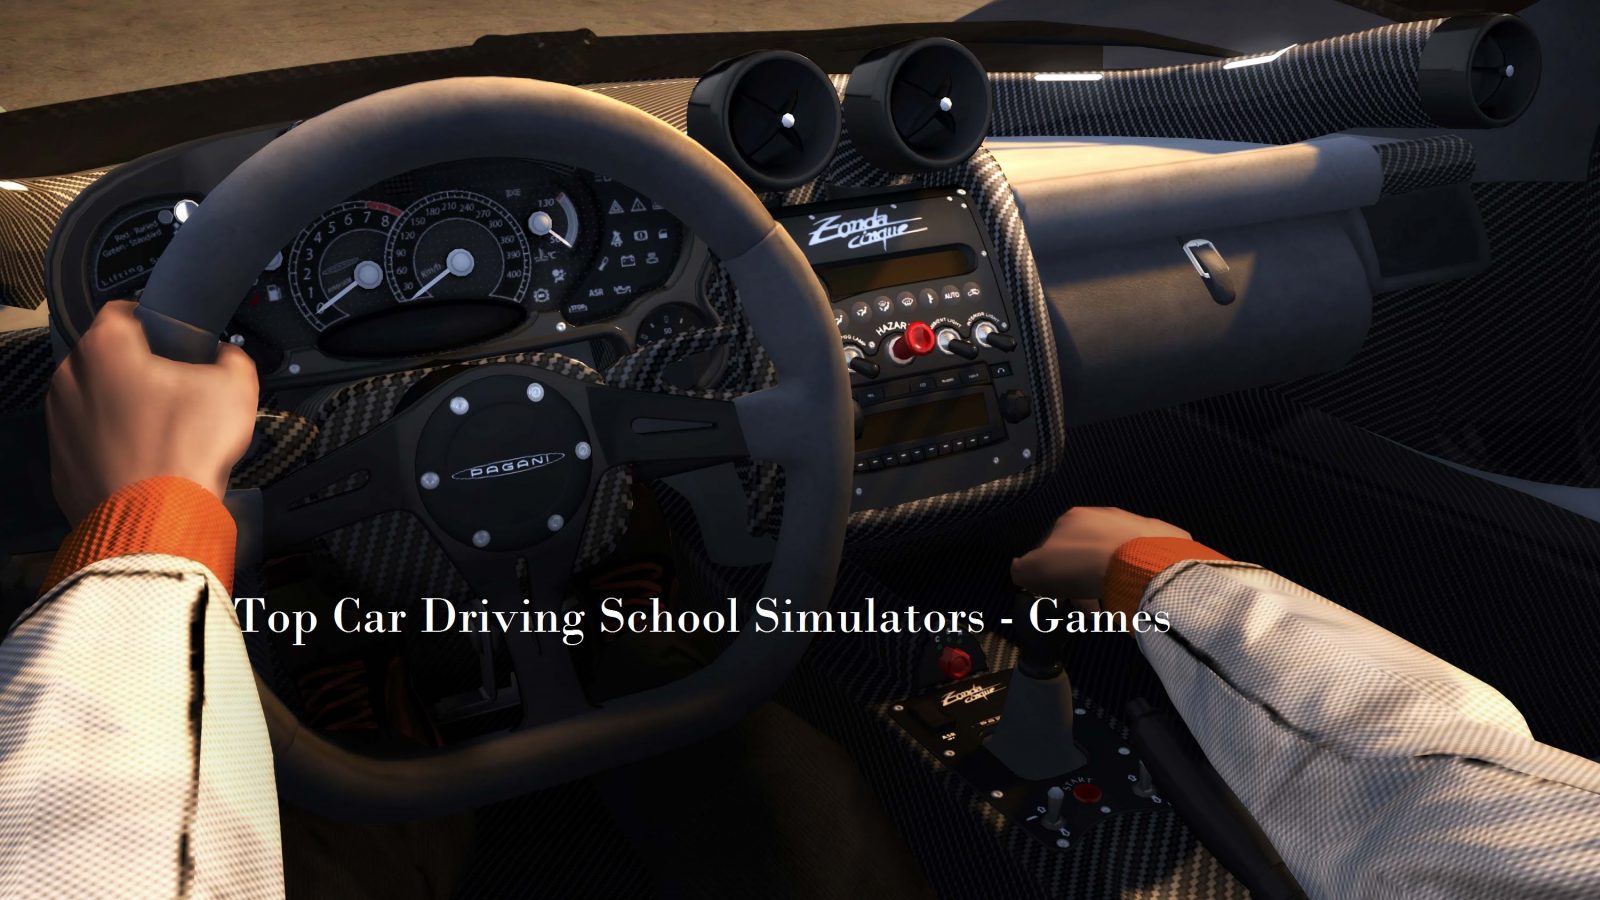 Игры гонки руль и педали играть. Test Drive Unlimited 2. Test Drive Unlimited 2 вид от 1 лица. Игровой руль в машину. Игра гонки с рулем.